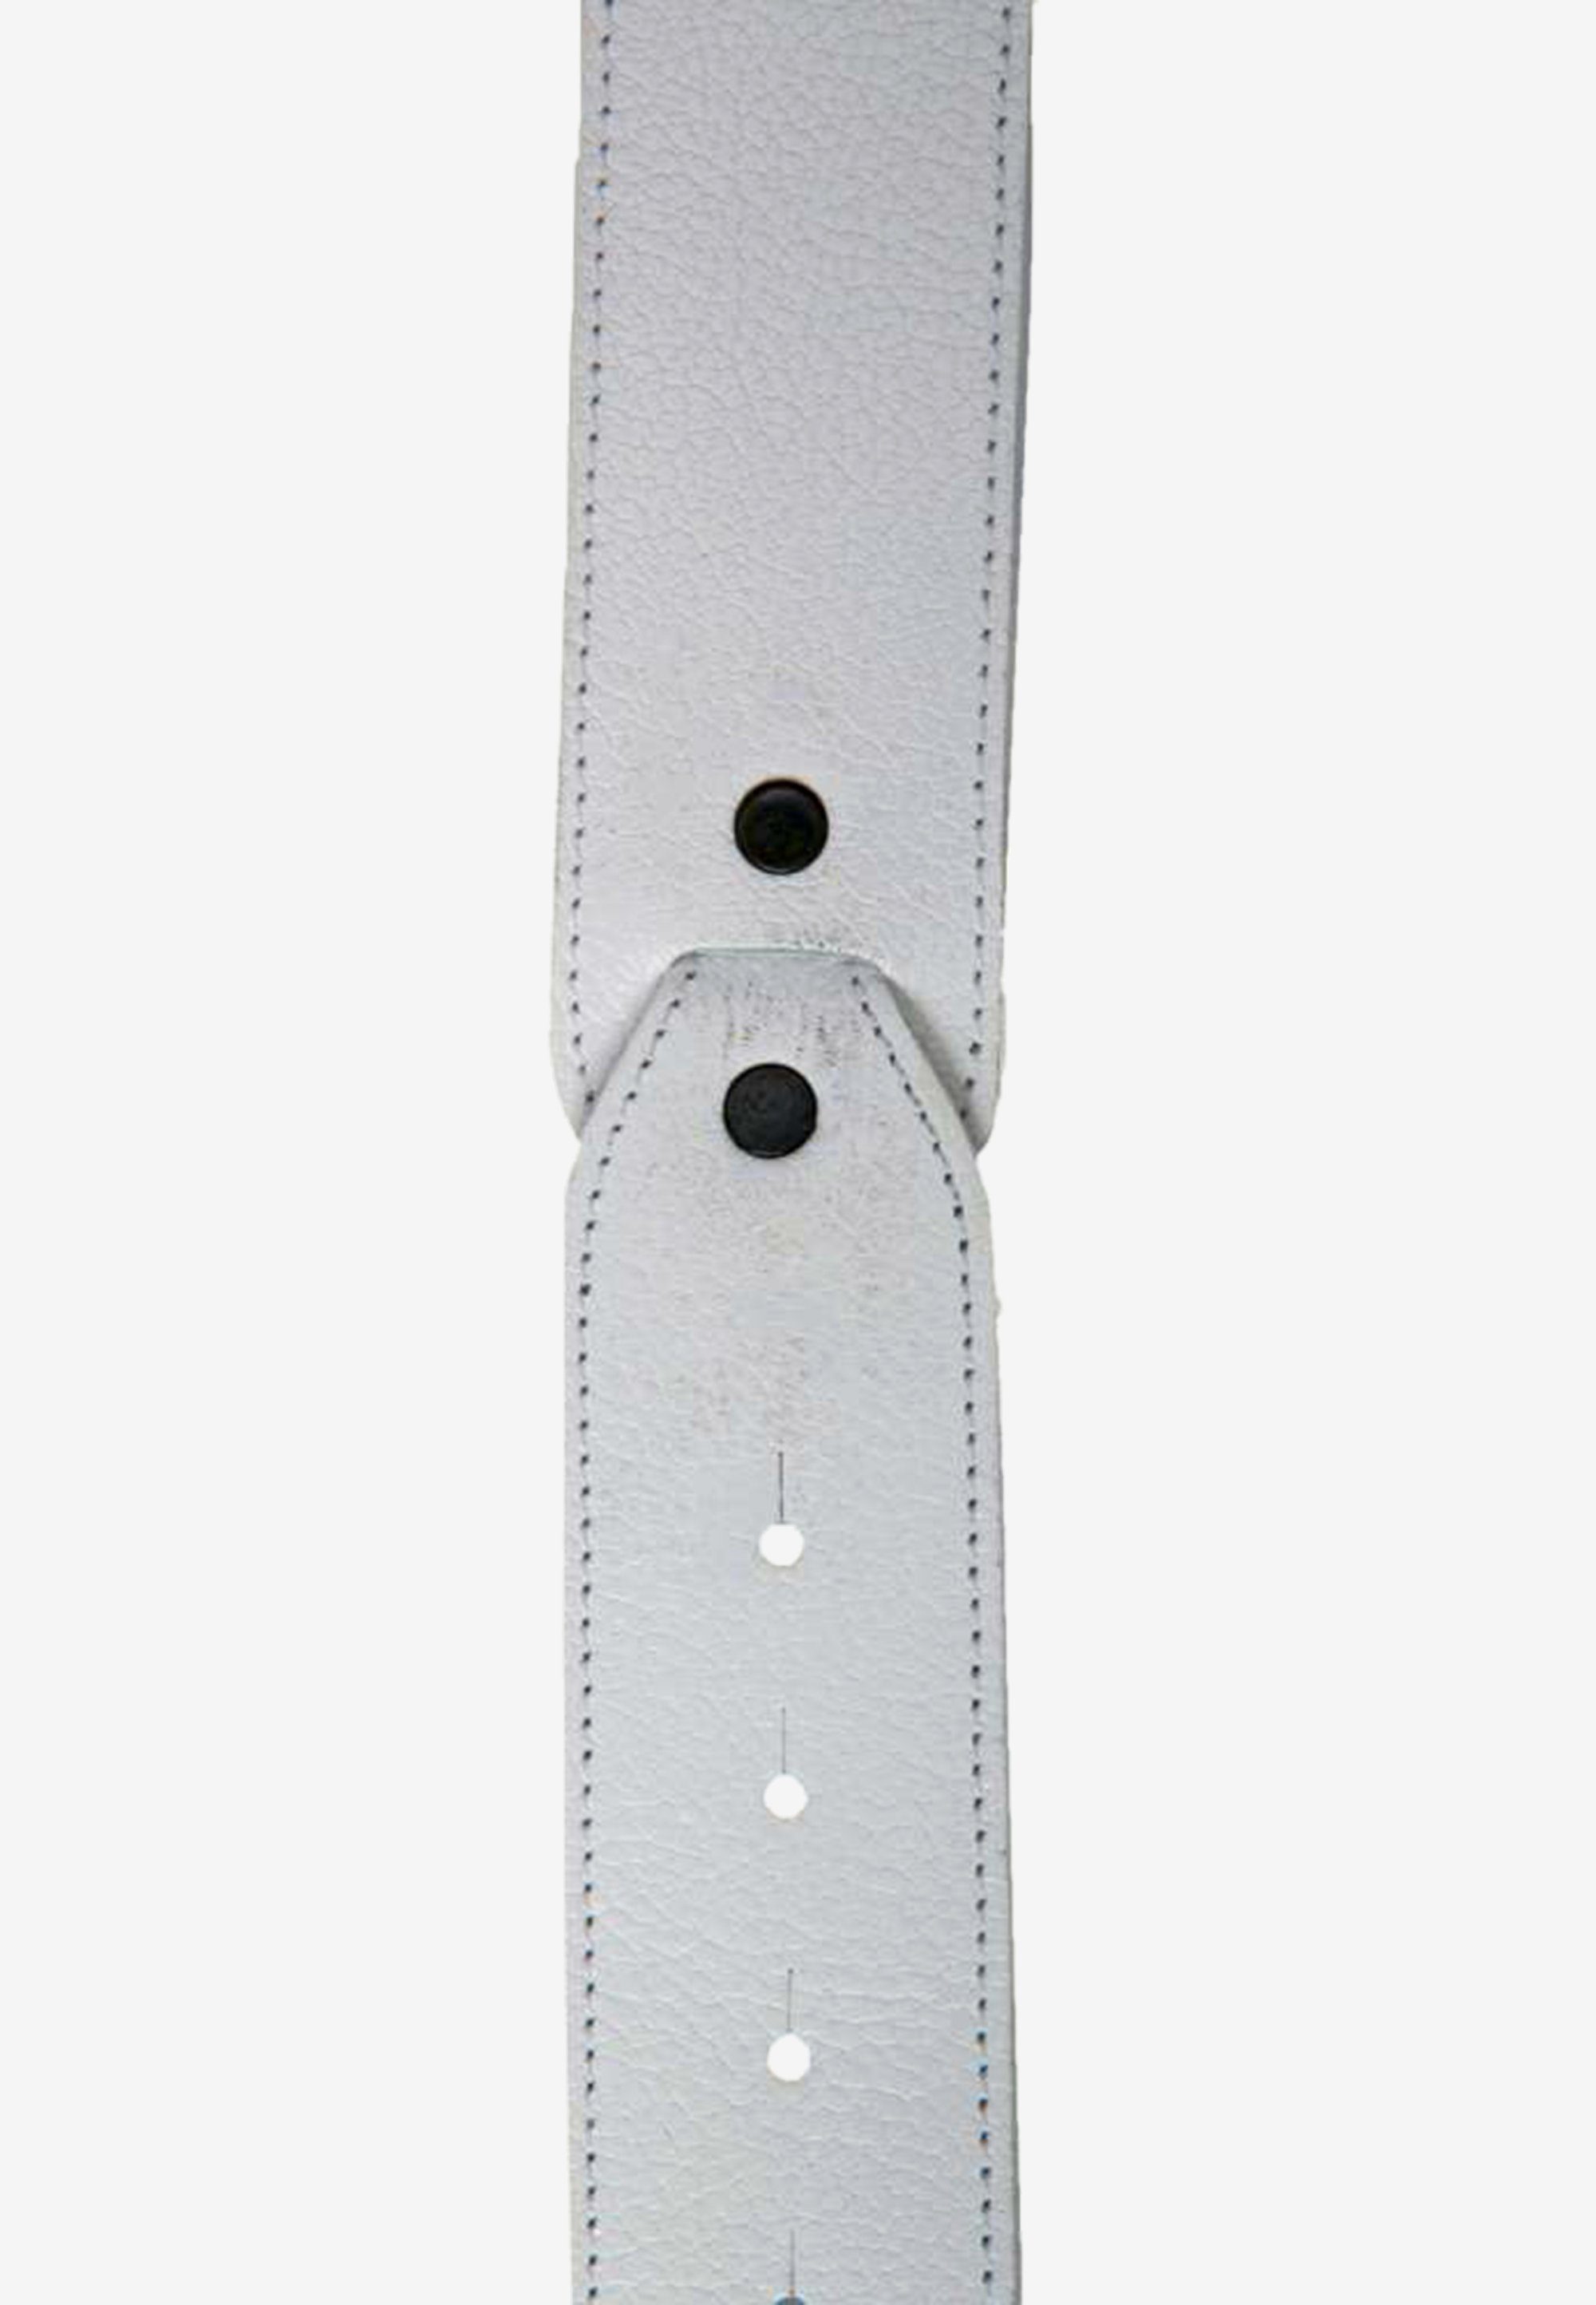 Cipo & Baxx Design in weiß stilvollem Ledergürtel